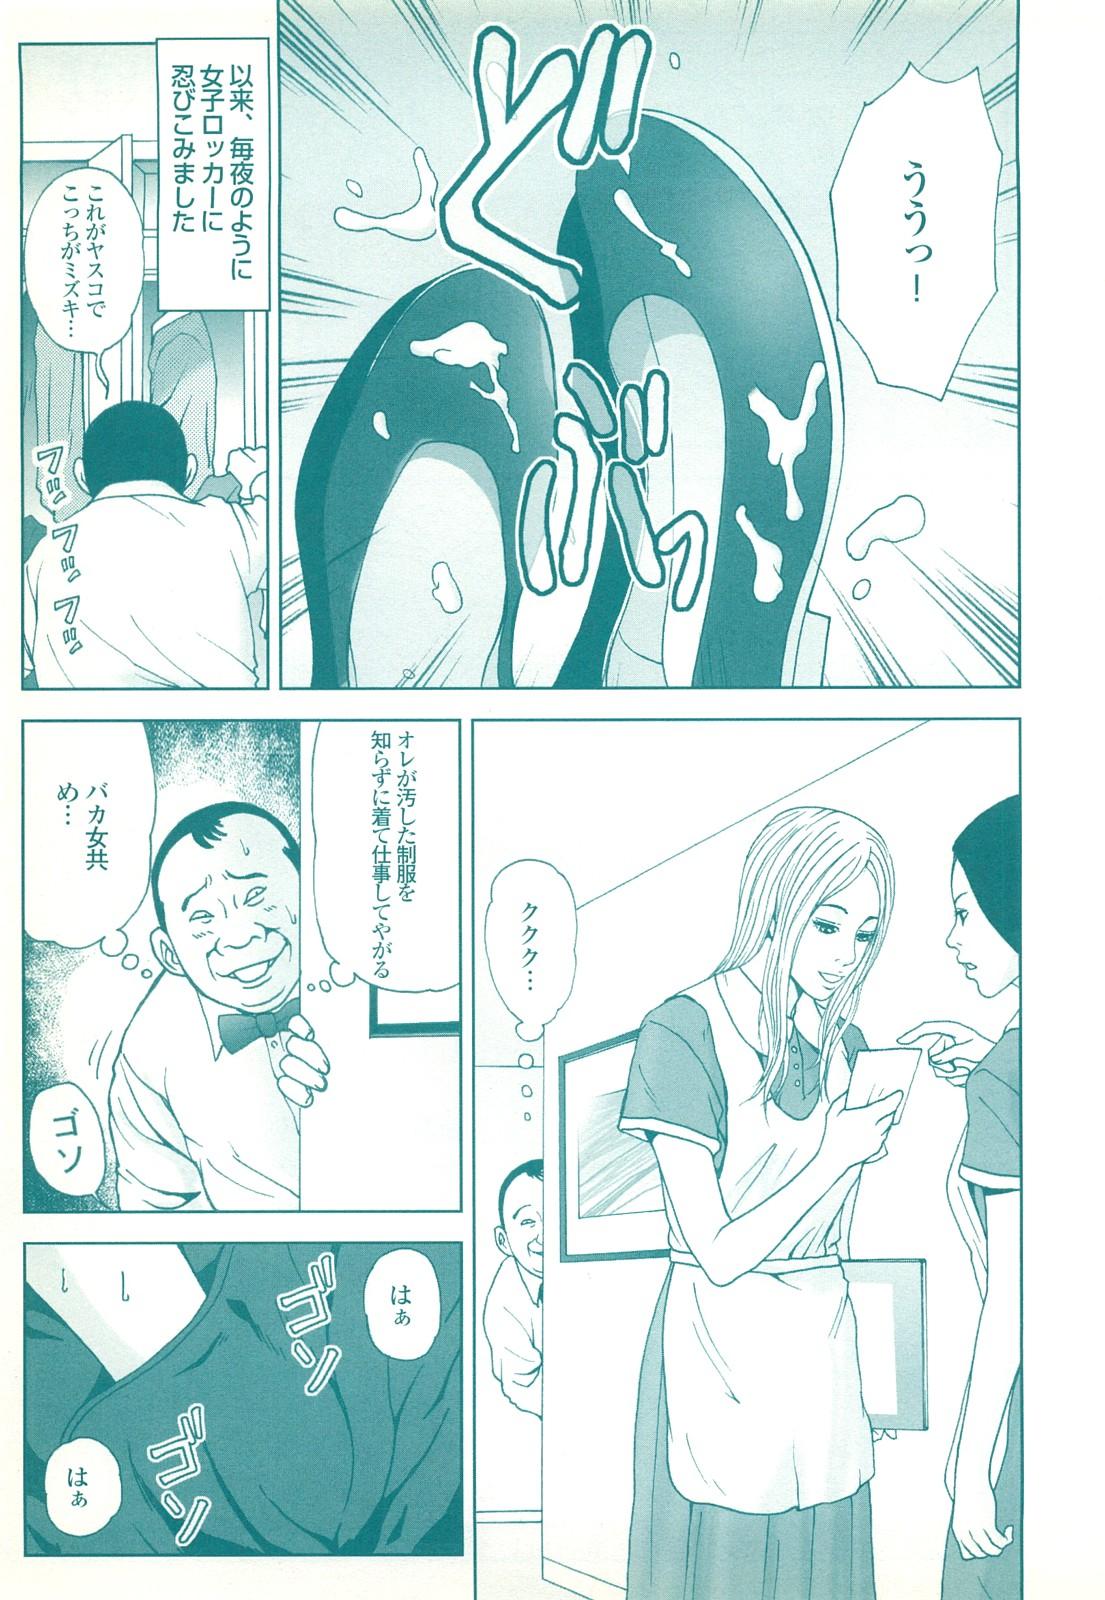 コミック裏モノJAPAN Vol.18 今井のりたつスペシャル号 184